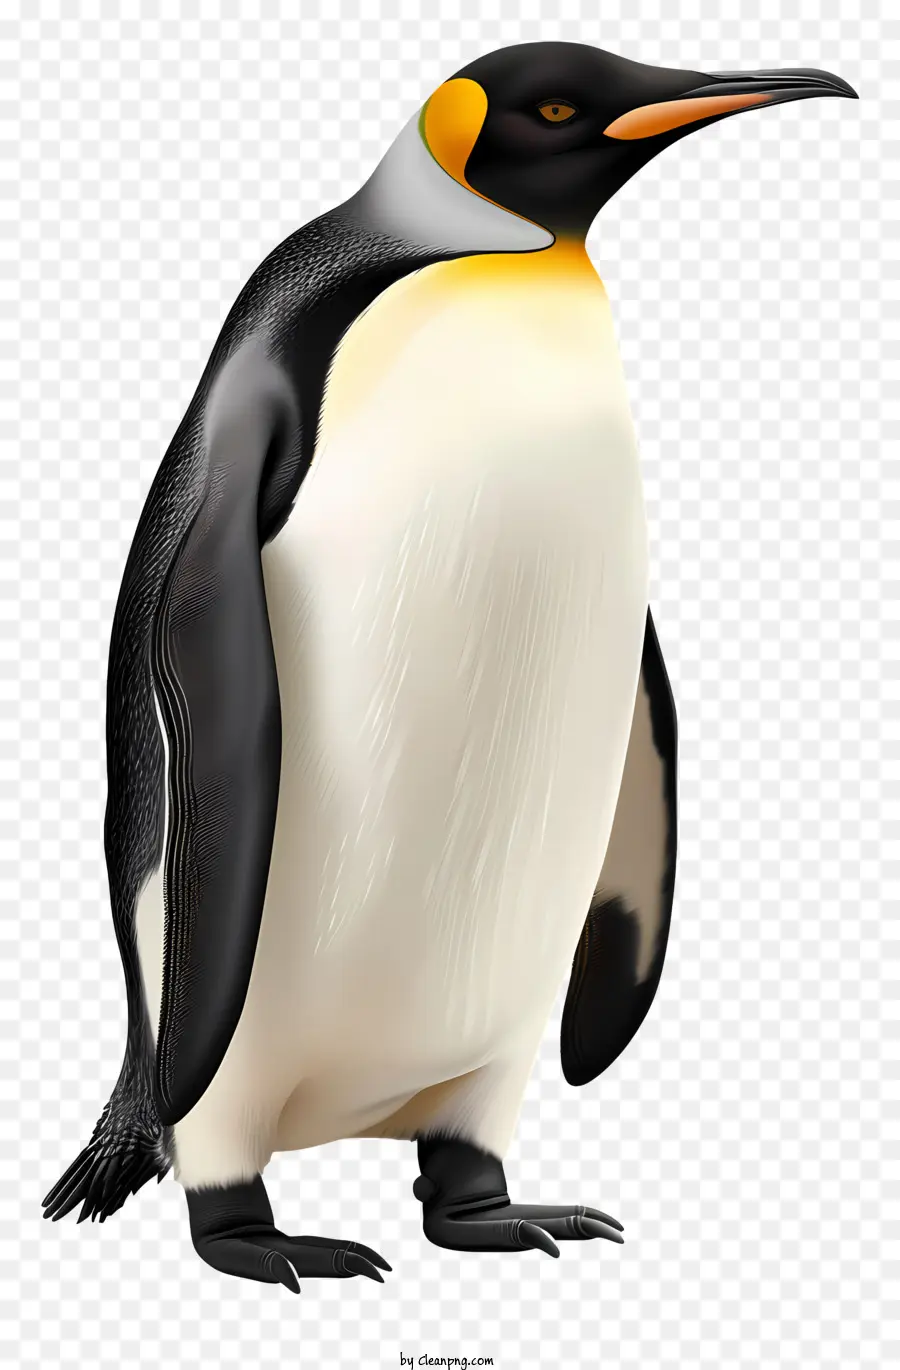 Chim cánh cụt - Chim cánh cụt có thân trắng, bụng màu cam